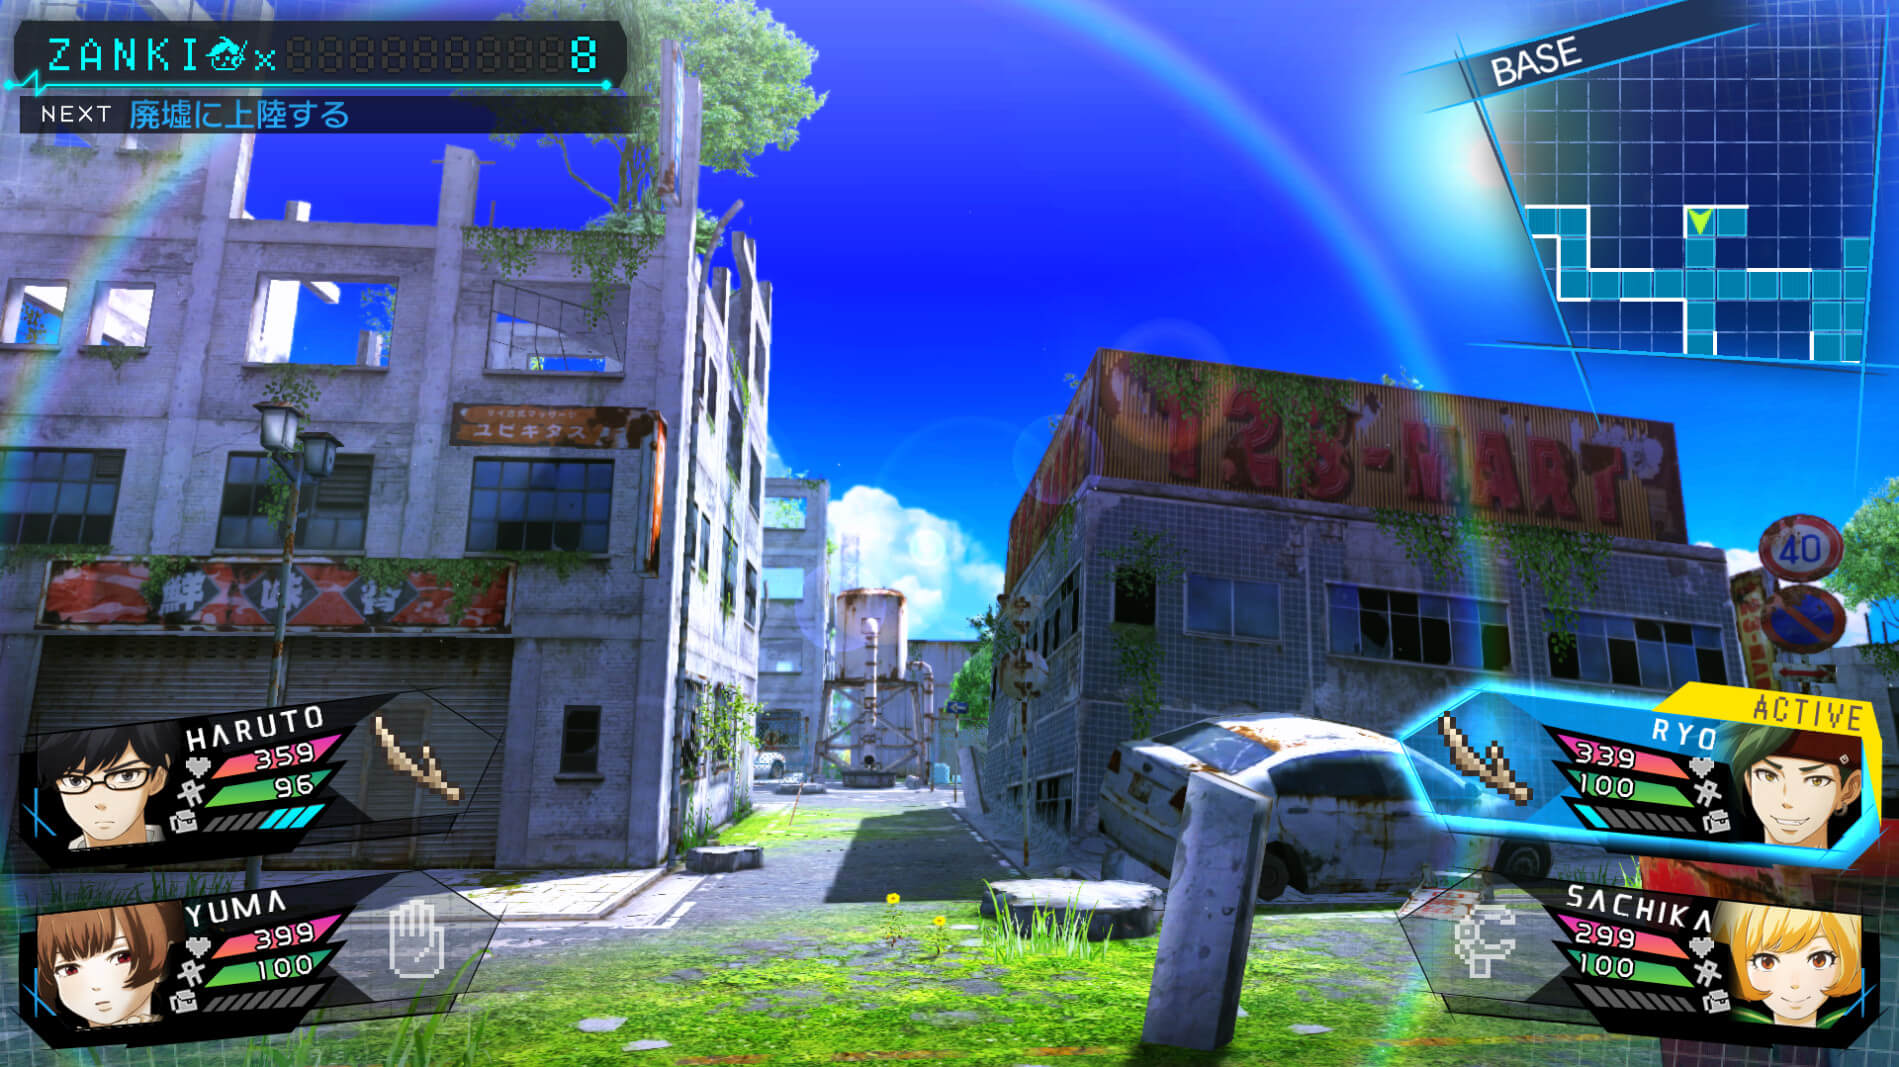 Скриншот из игры Zanki Zero: Last Beginning